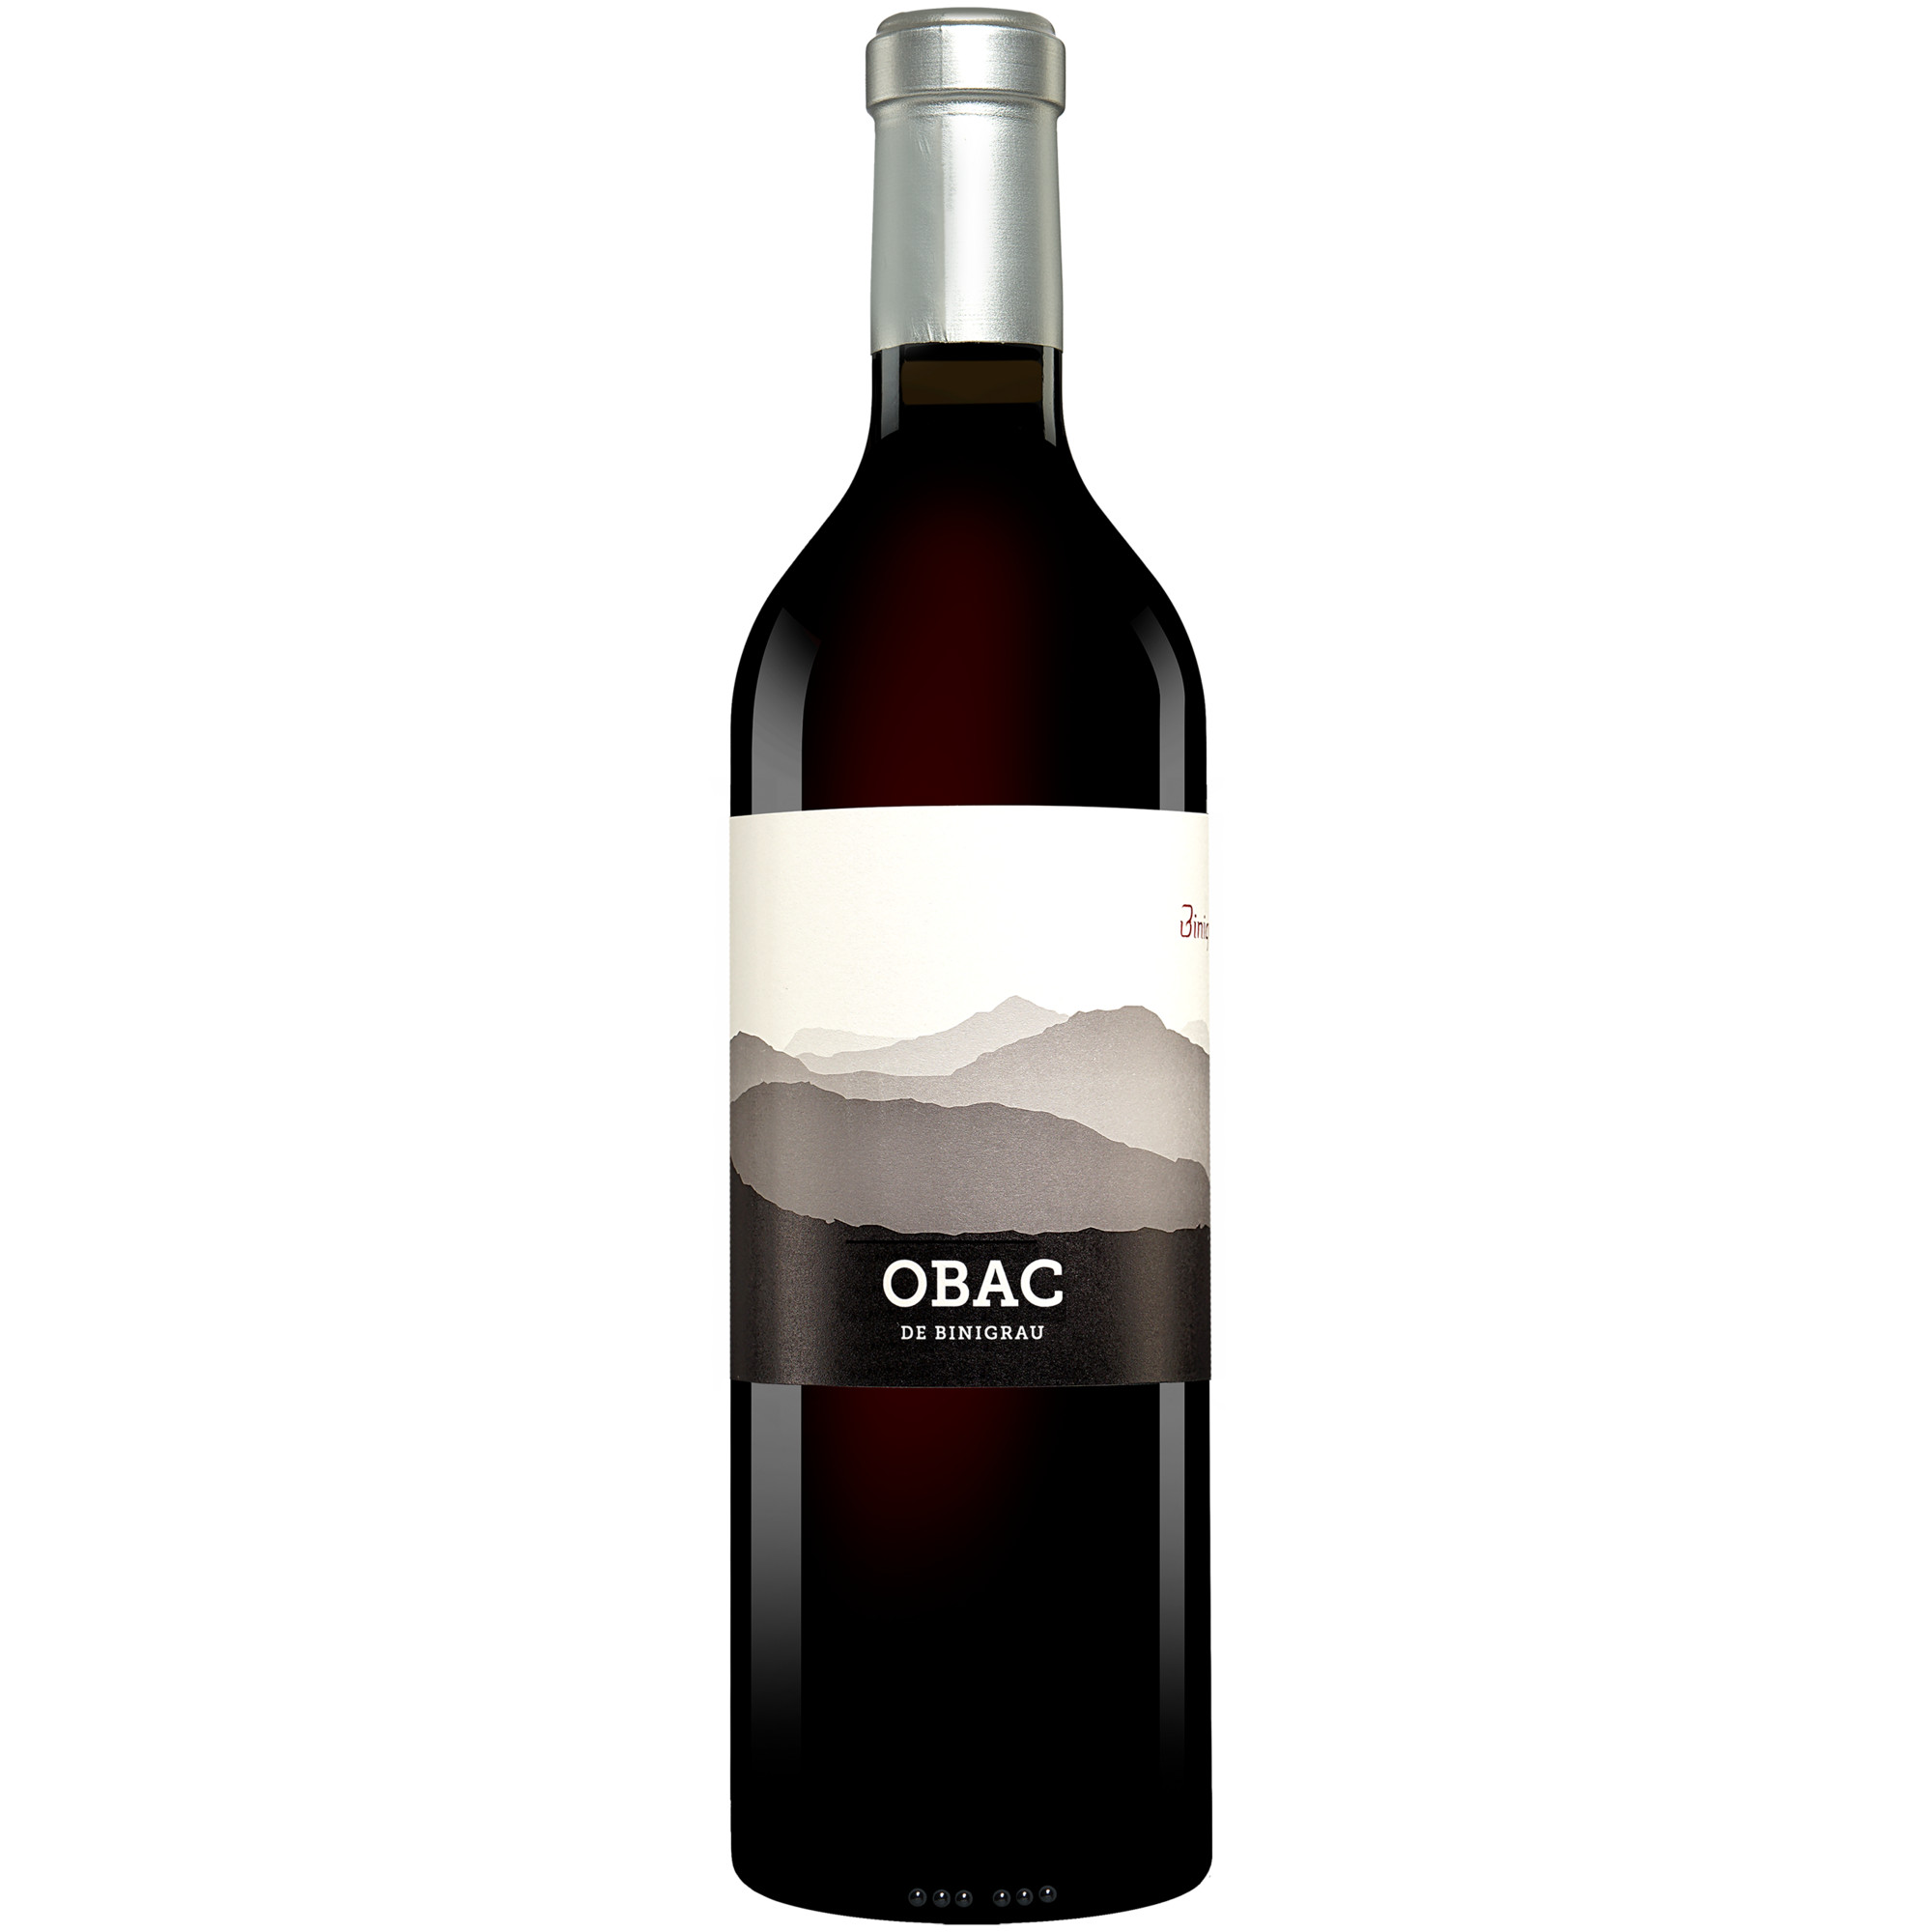 Binigrau Negre Obac 2020  014.5% Vol. Rotwein Trocken aus Spanien